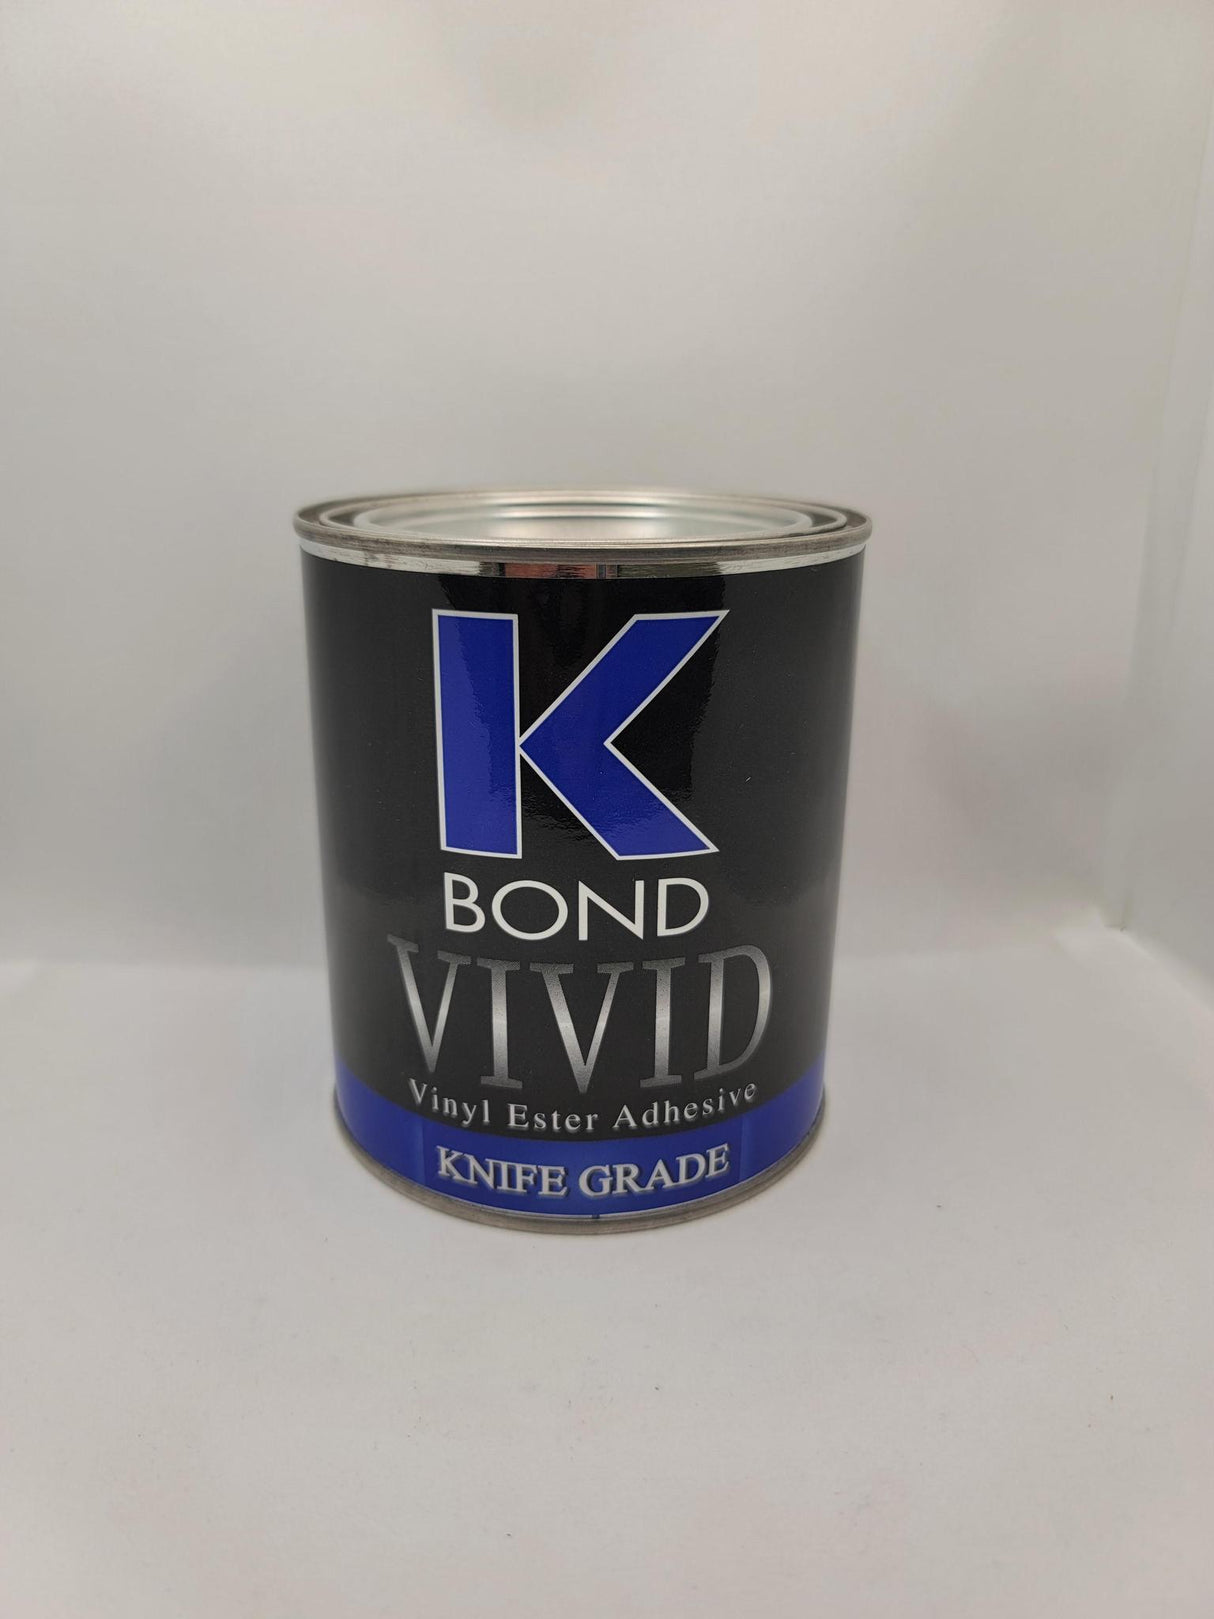 K Bond Vivid Knife Grade